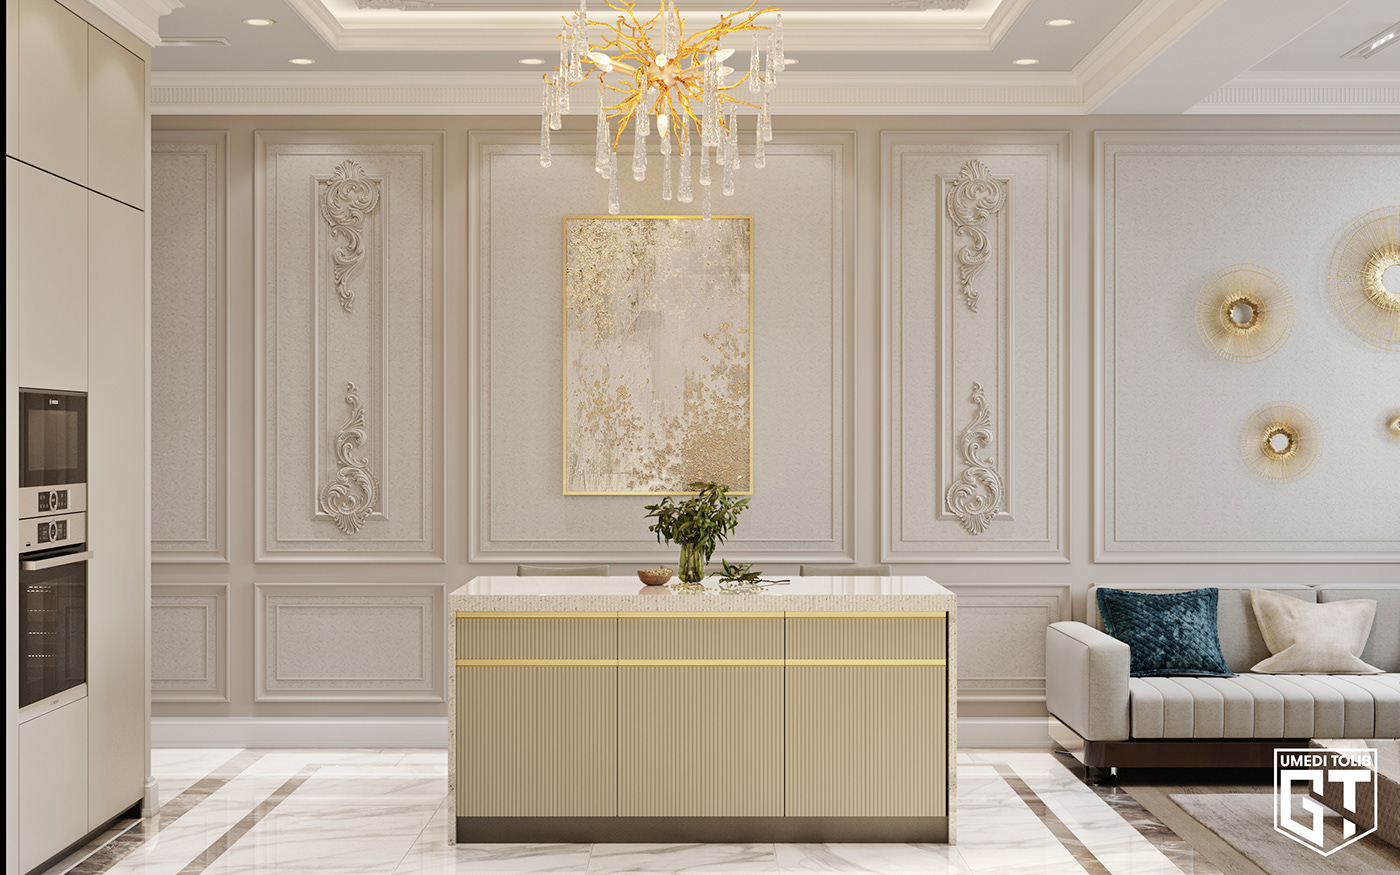 3dmax corona render  Design interiors kitchen design Kitchenroom rendering visualization white kitchen